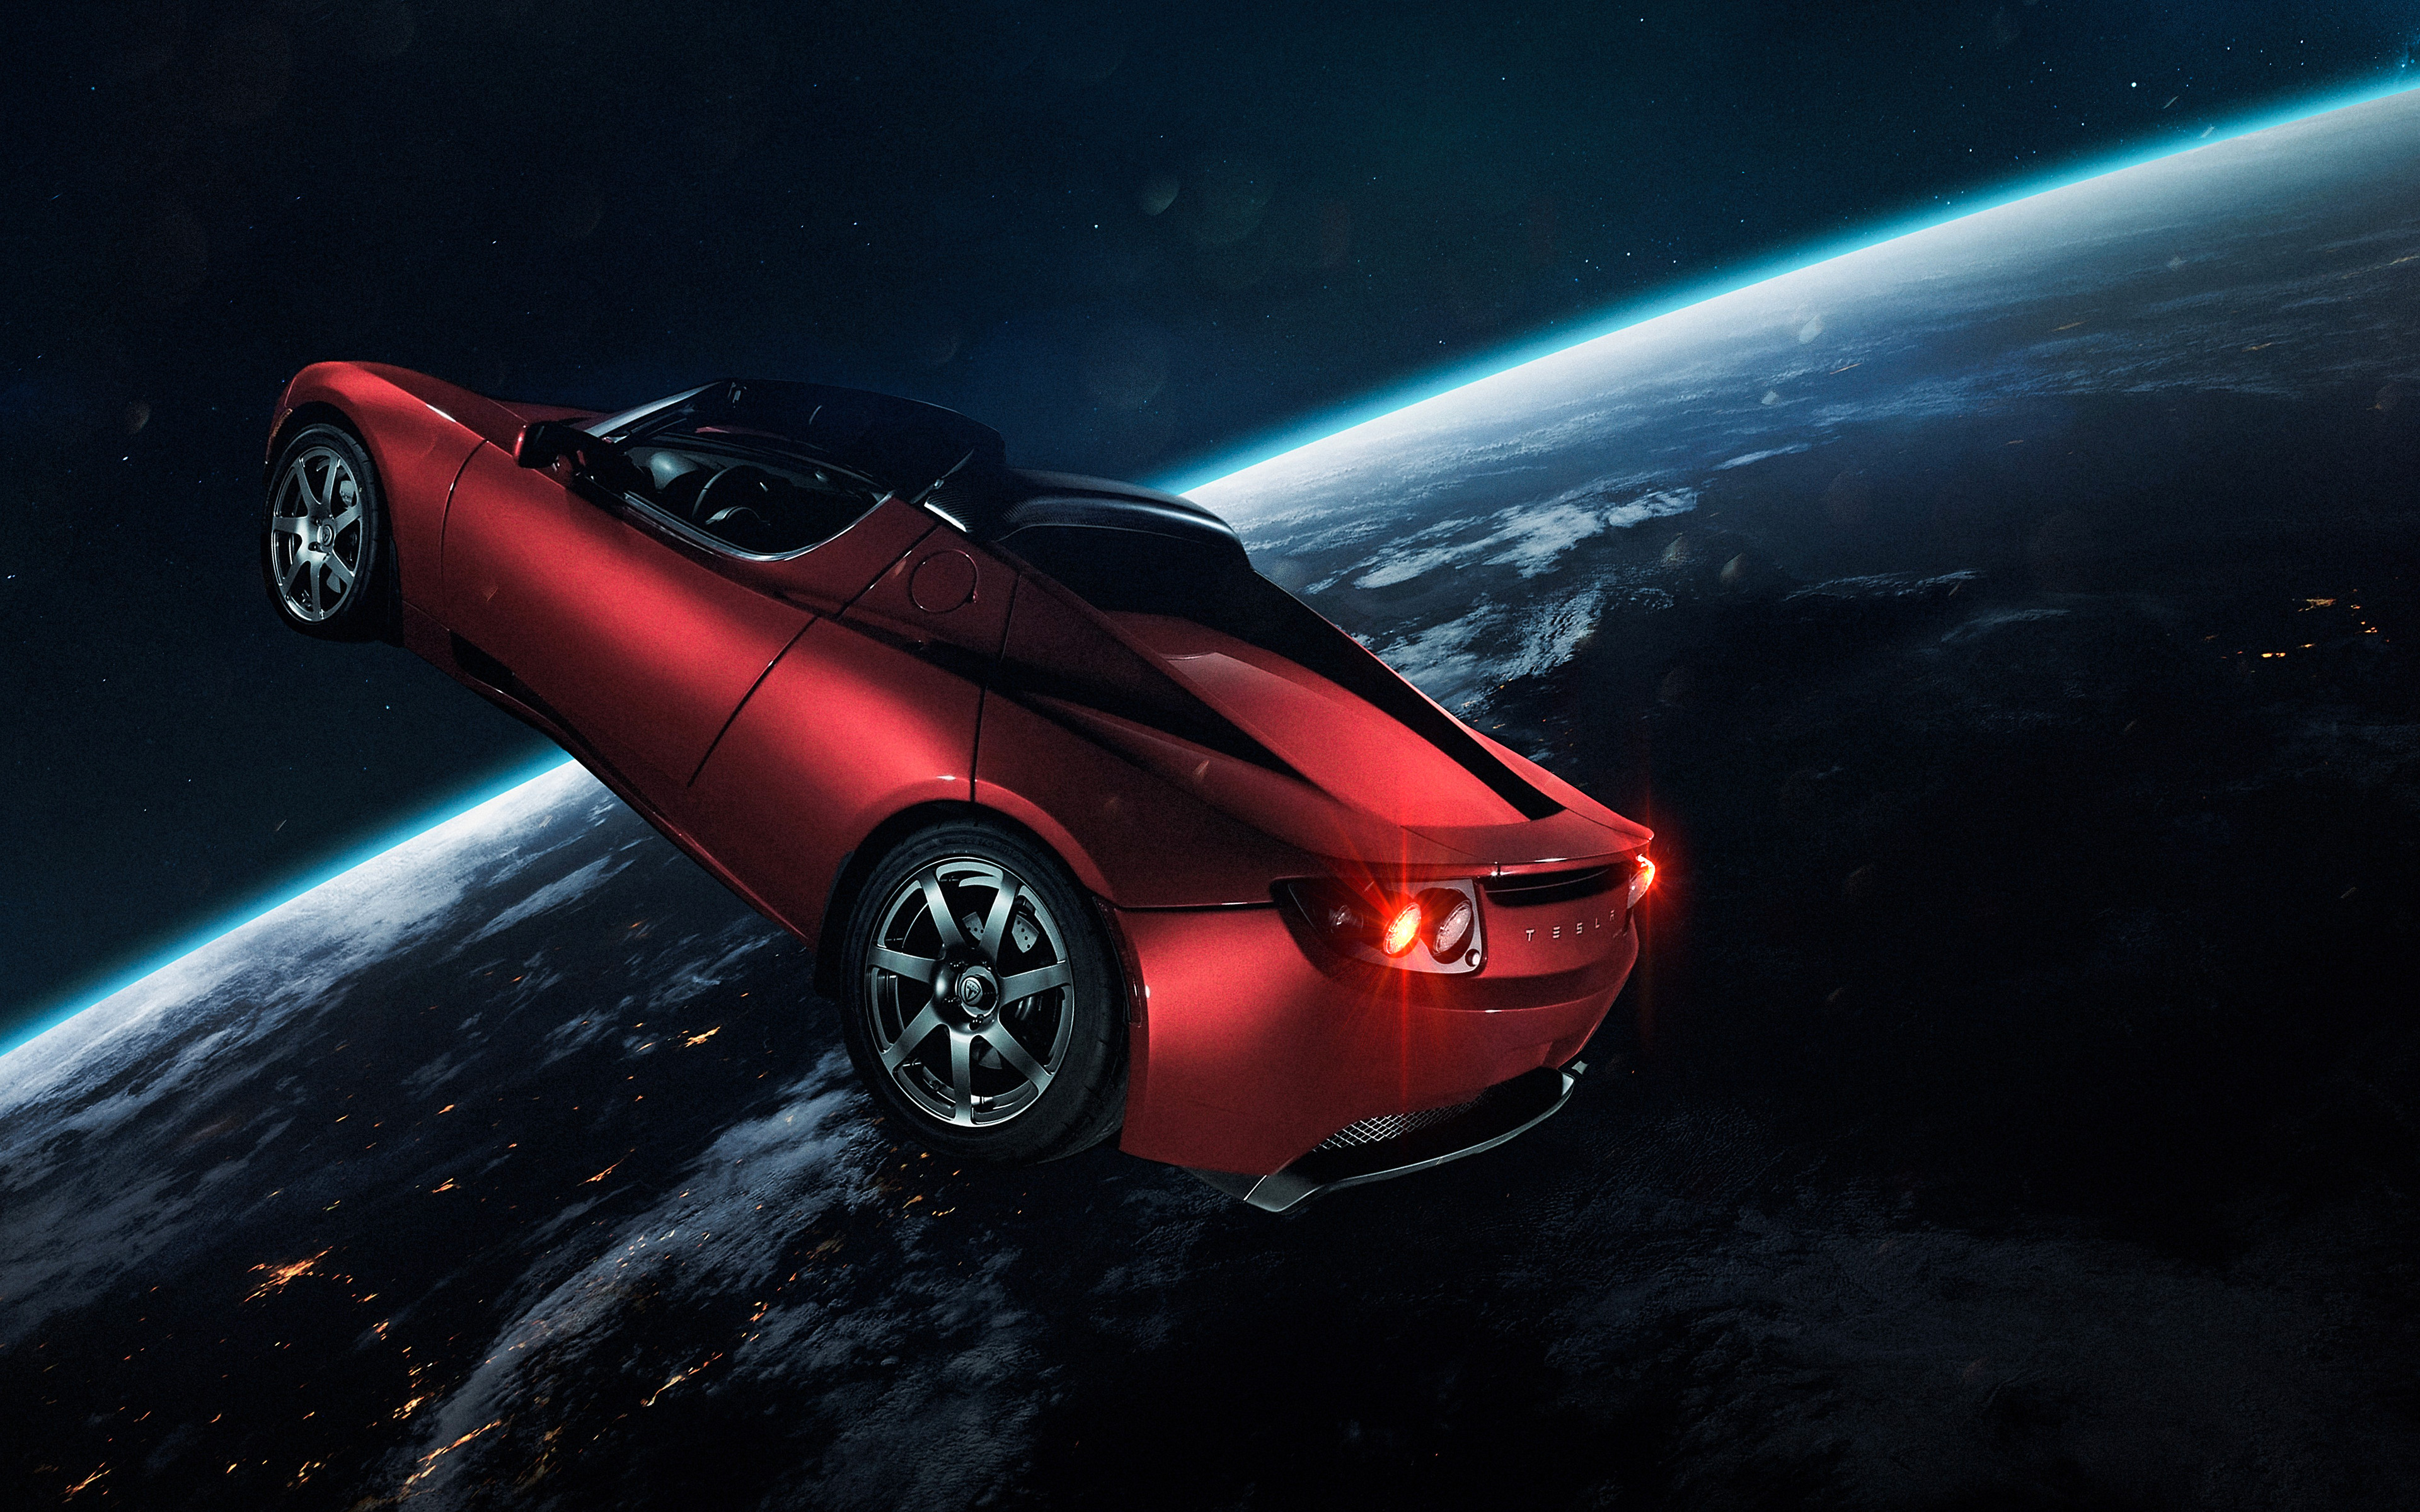 Elon Musk's Tesla Roadster 4K Wallpaper, Tesla in Space, Red Car, Earth